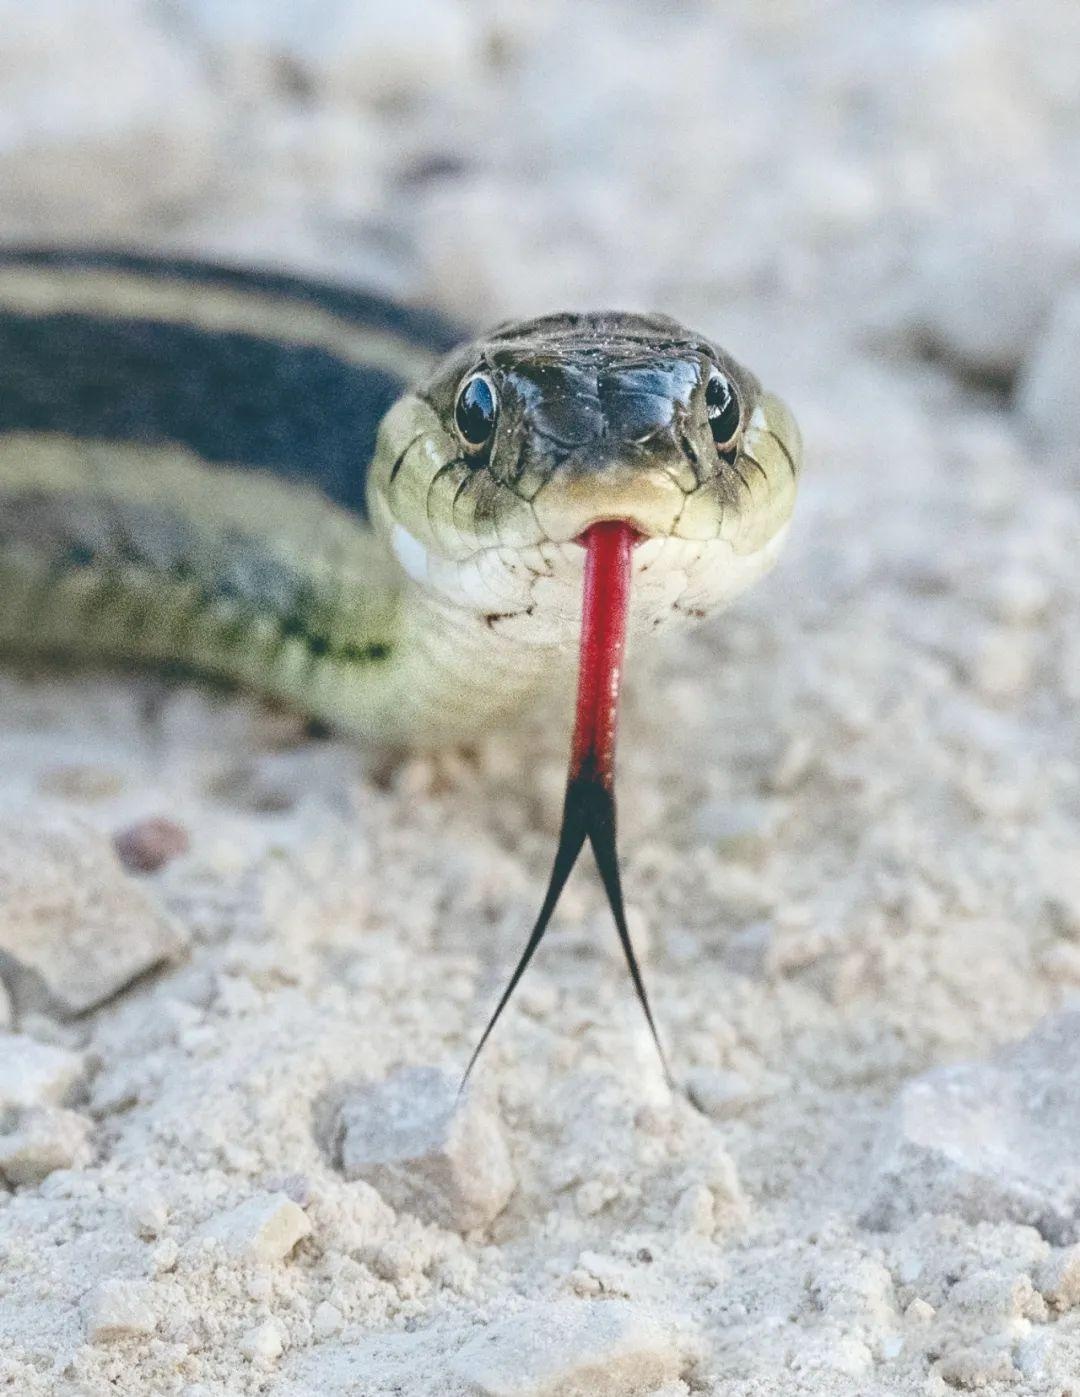 原来蛇和蜥蜴的舌头分叉是有这作用